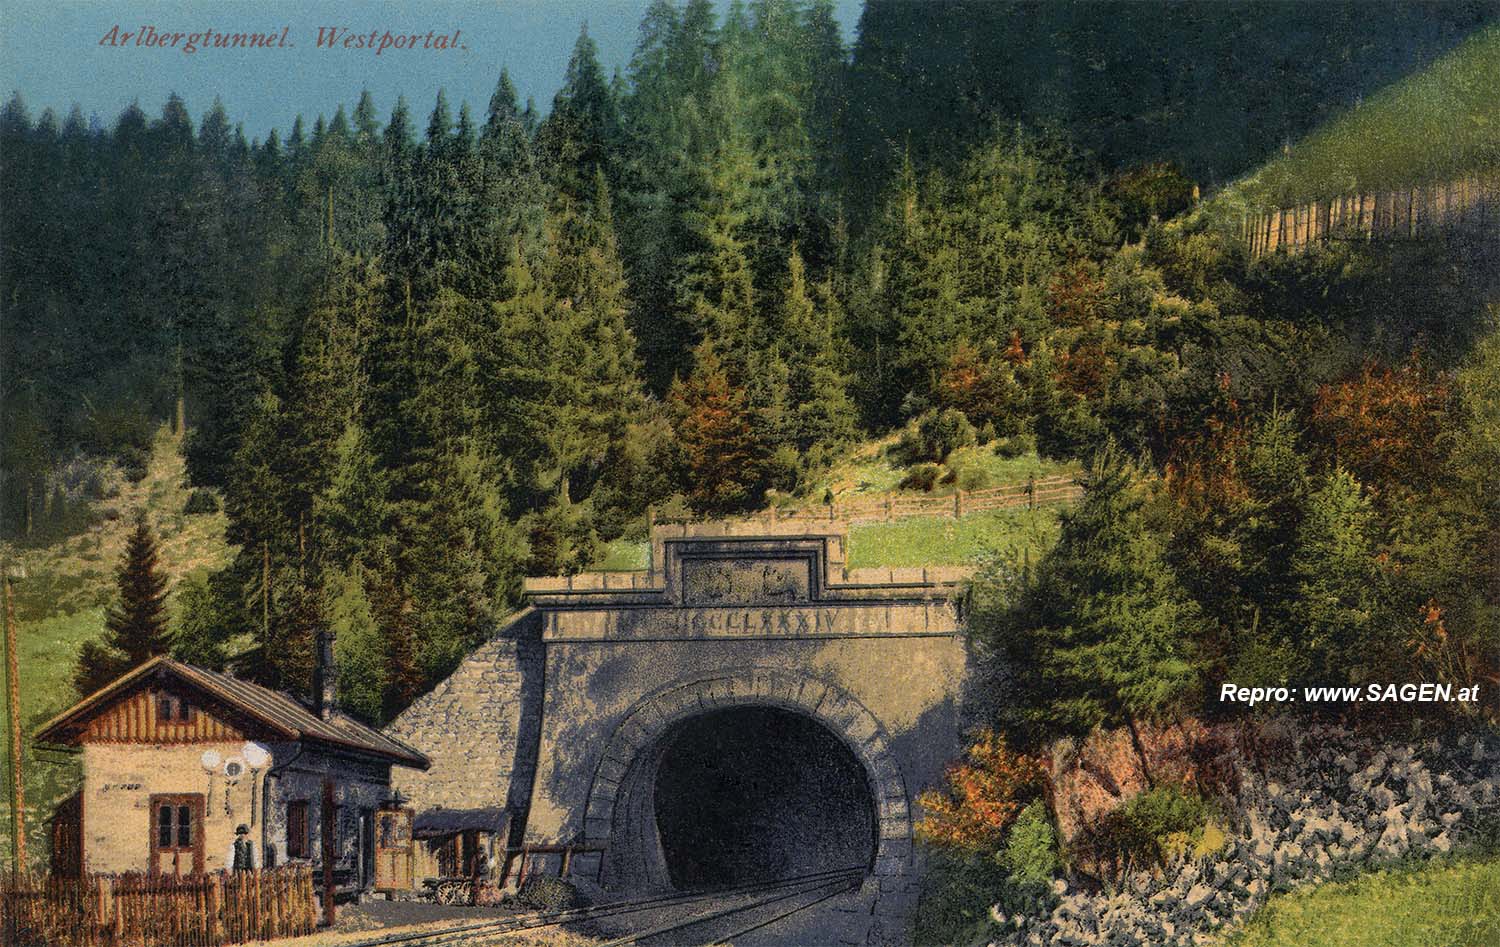 Arlbergtunnel, Westportal